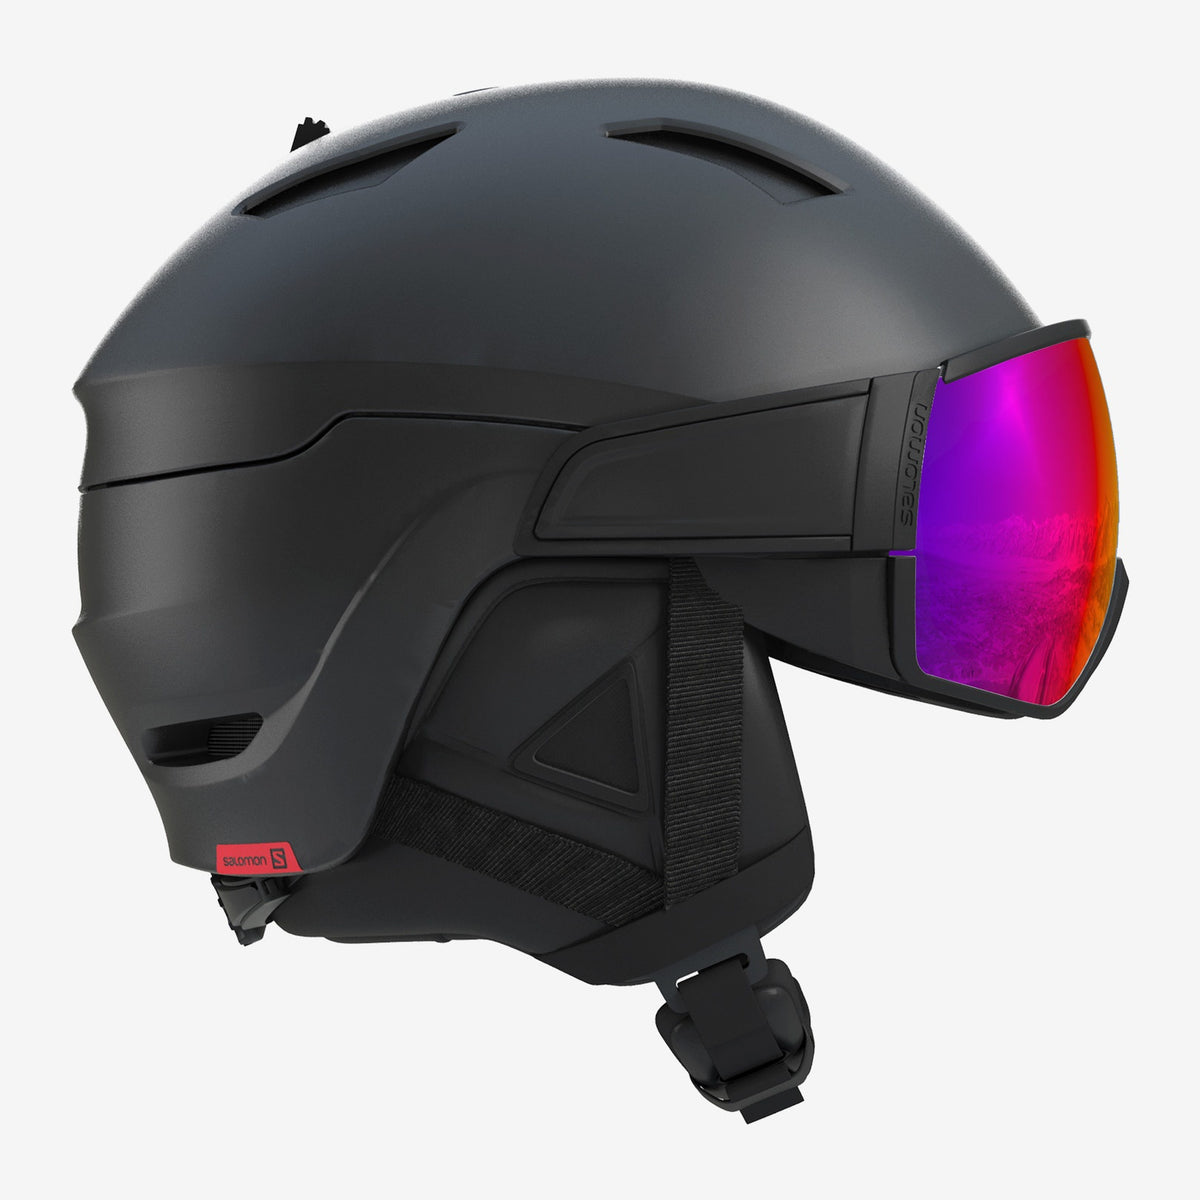 Driver Helmet / Goggles